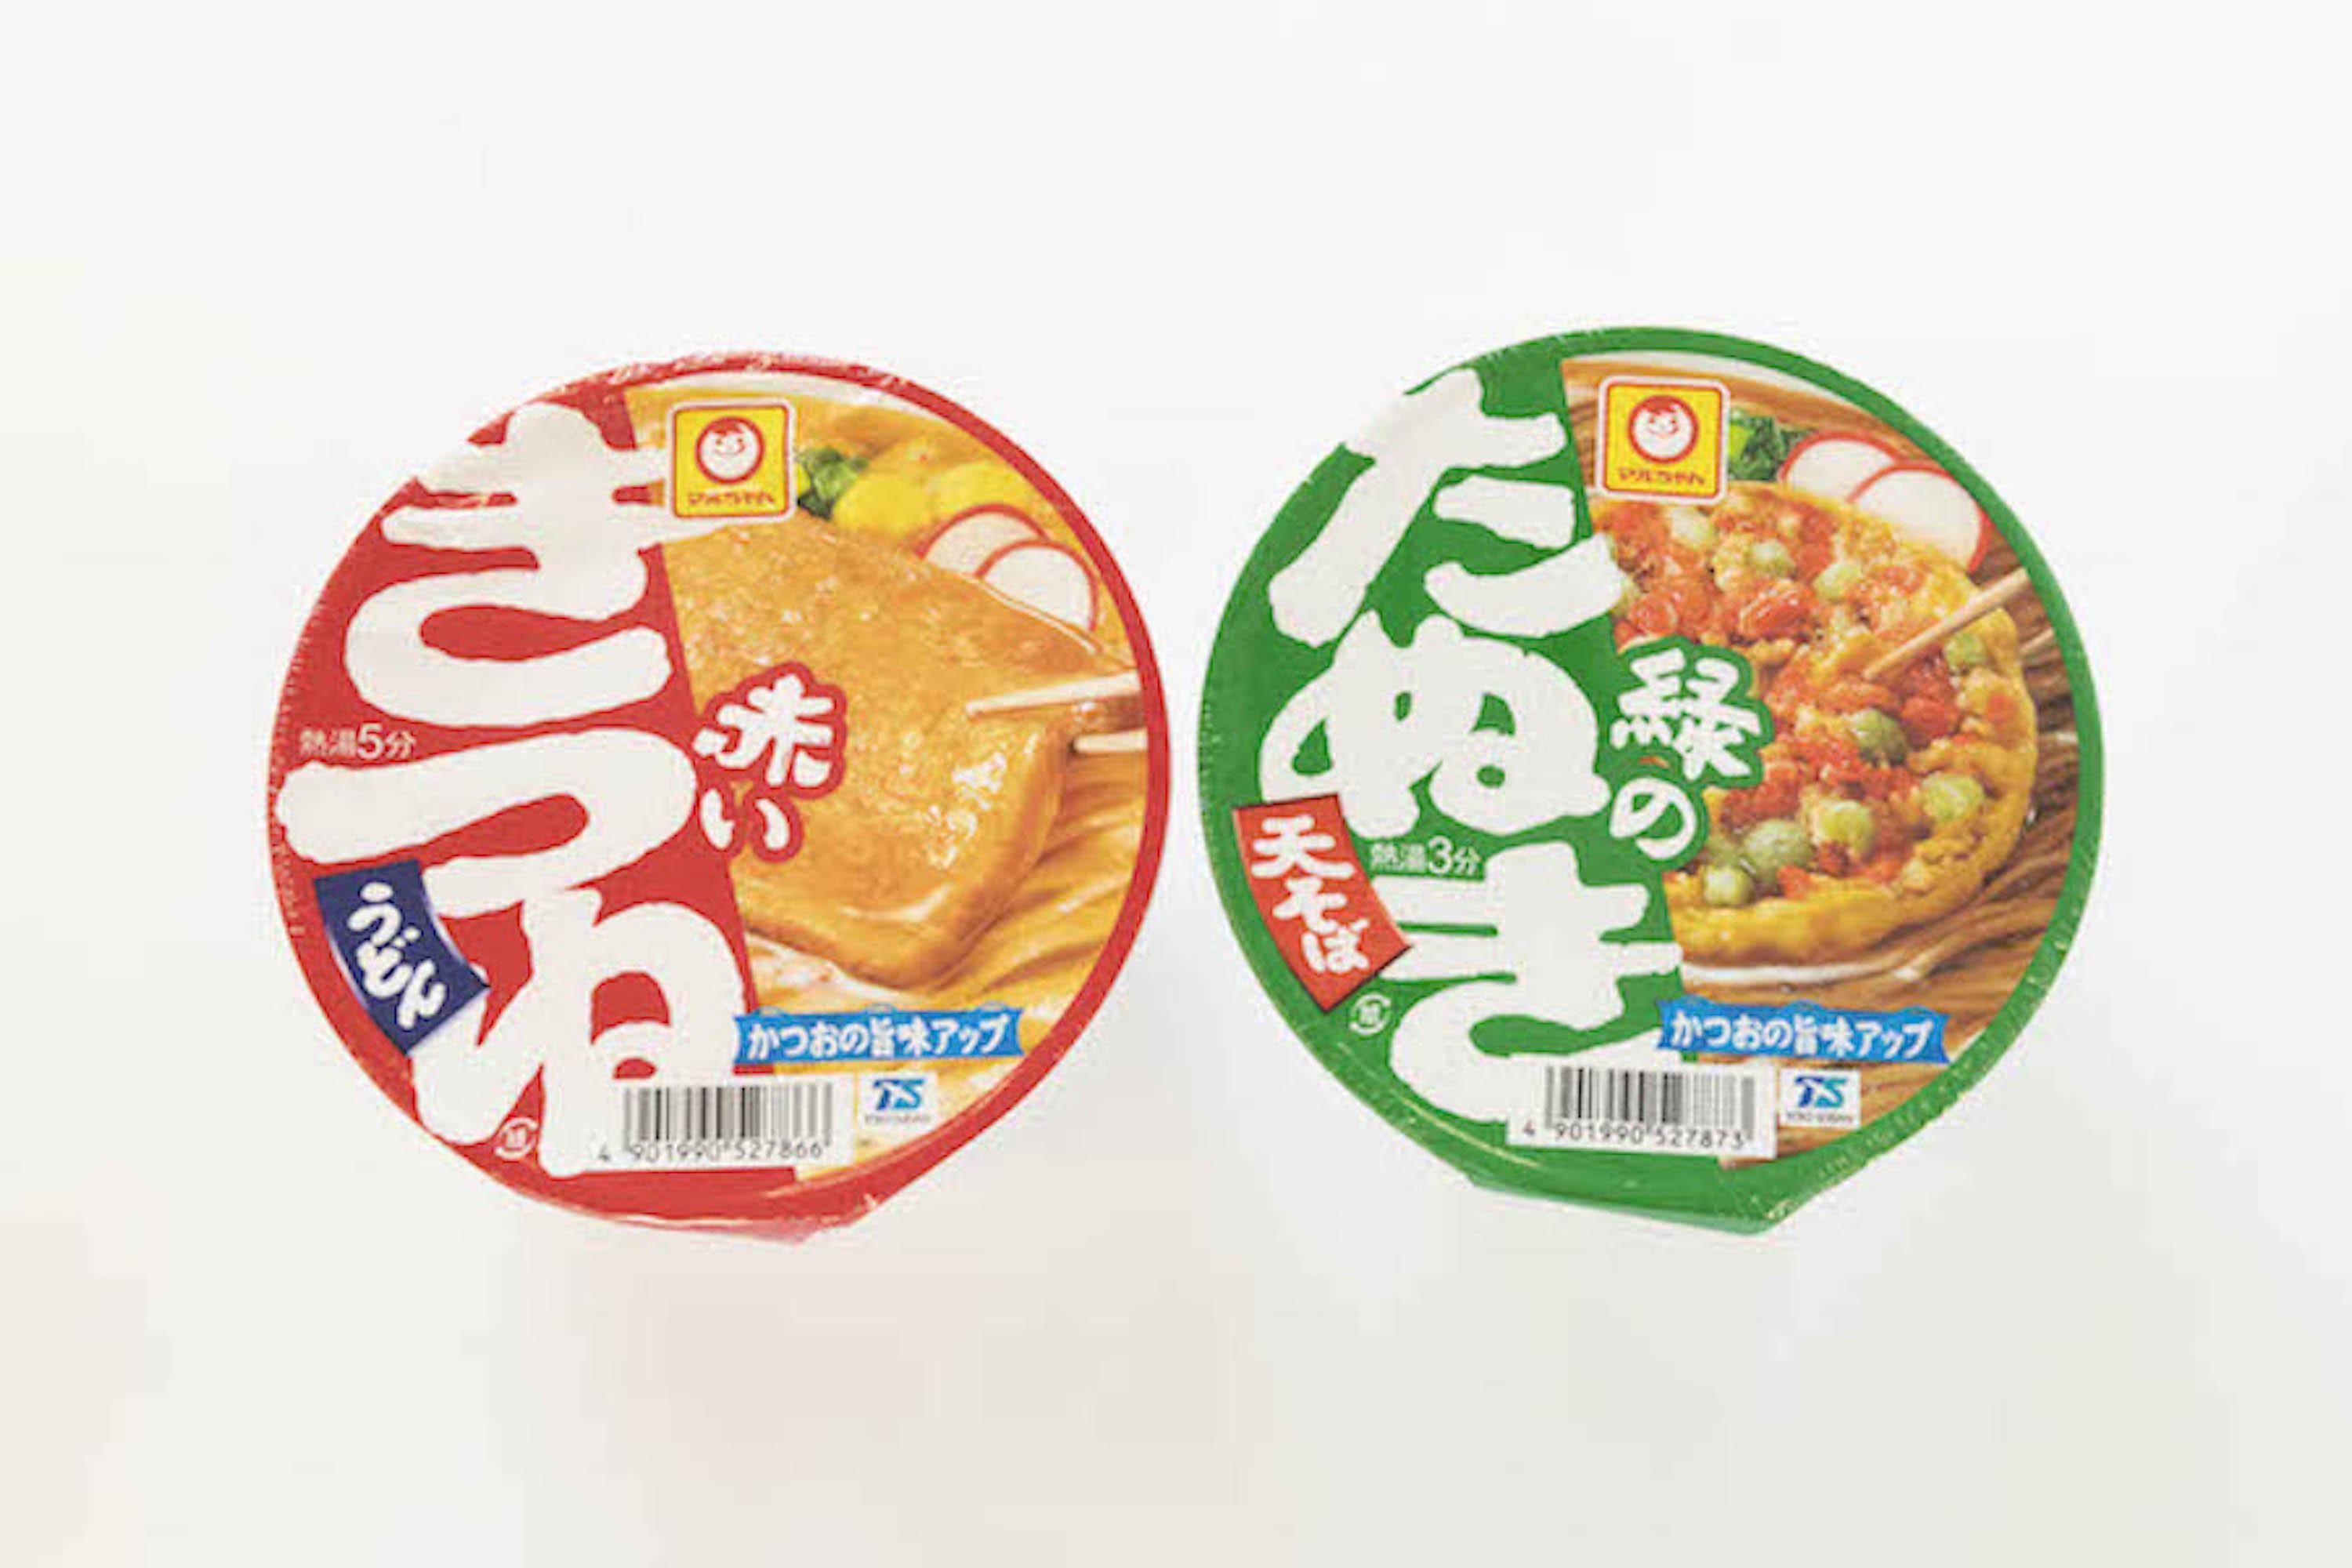 東日本向けの赤いきつねと緑のたぬき。パッケージの下の方に小さく「E」と書かれている